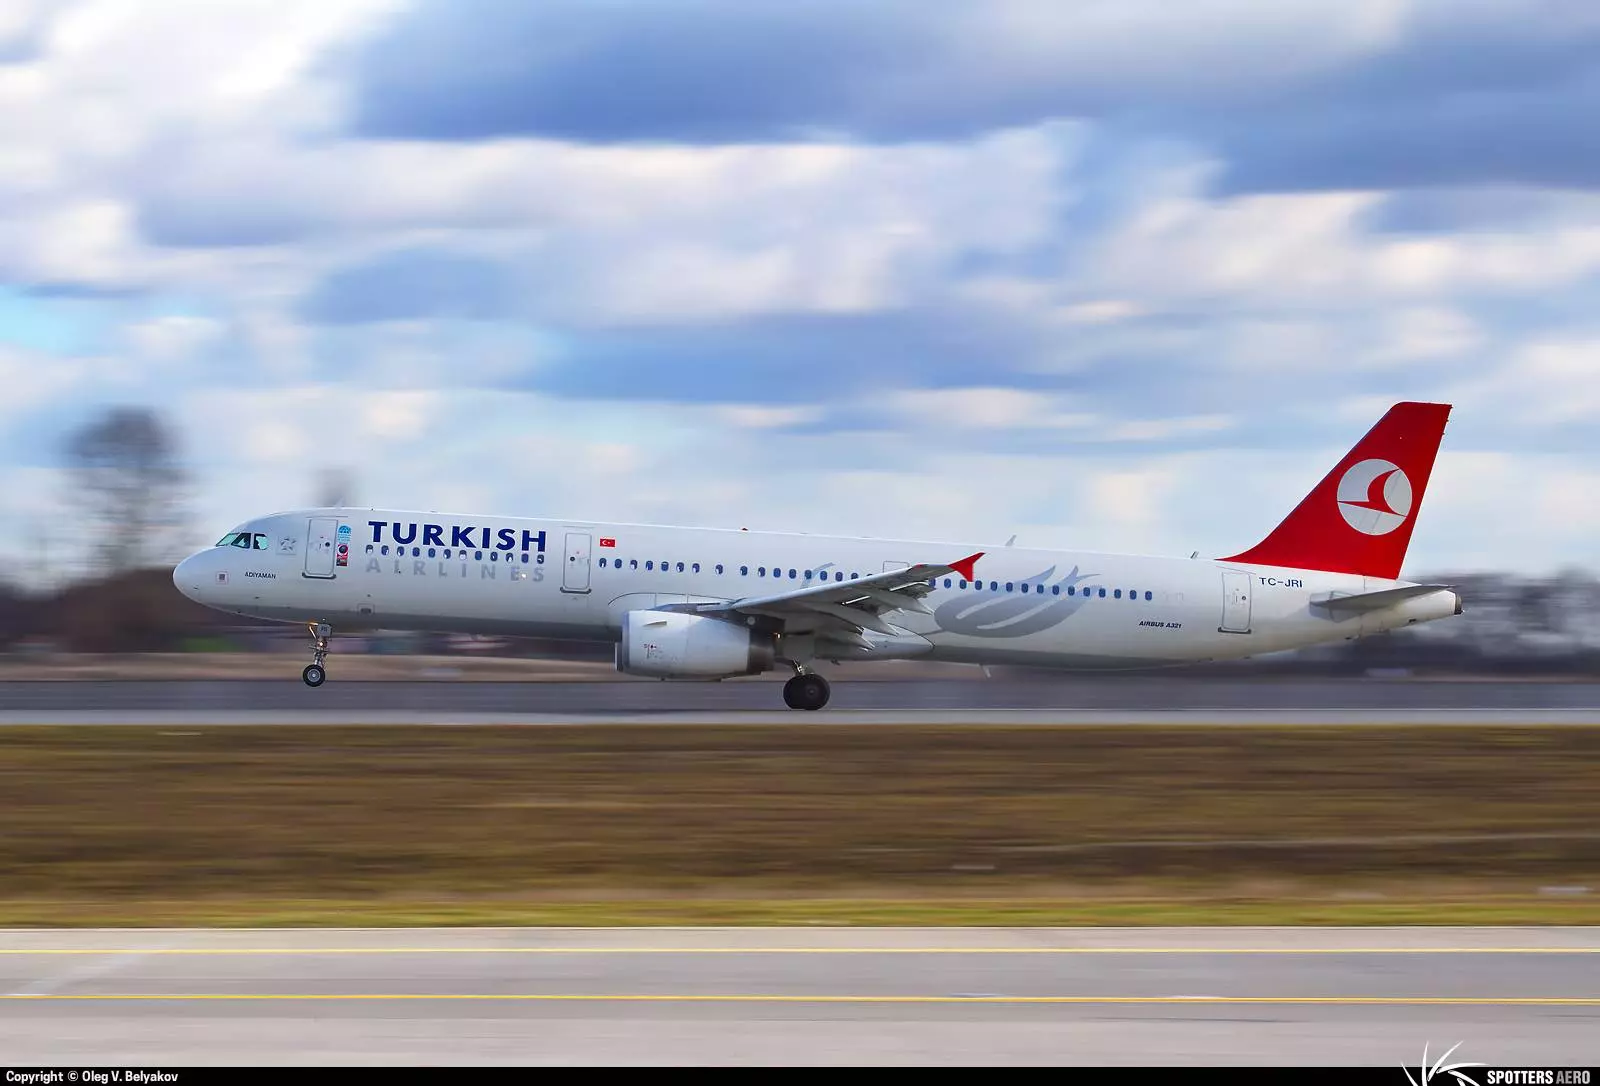 Отзывы о «турецких авиалиниях»: что важно учесть перед полётом, туристу на заметку